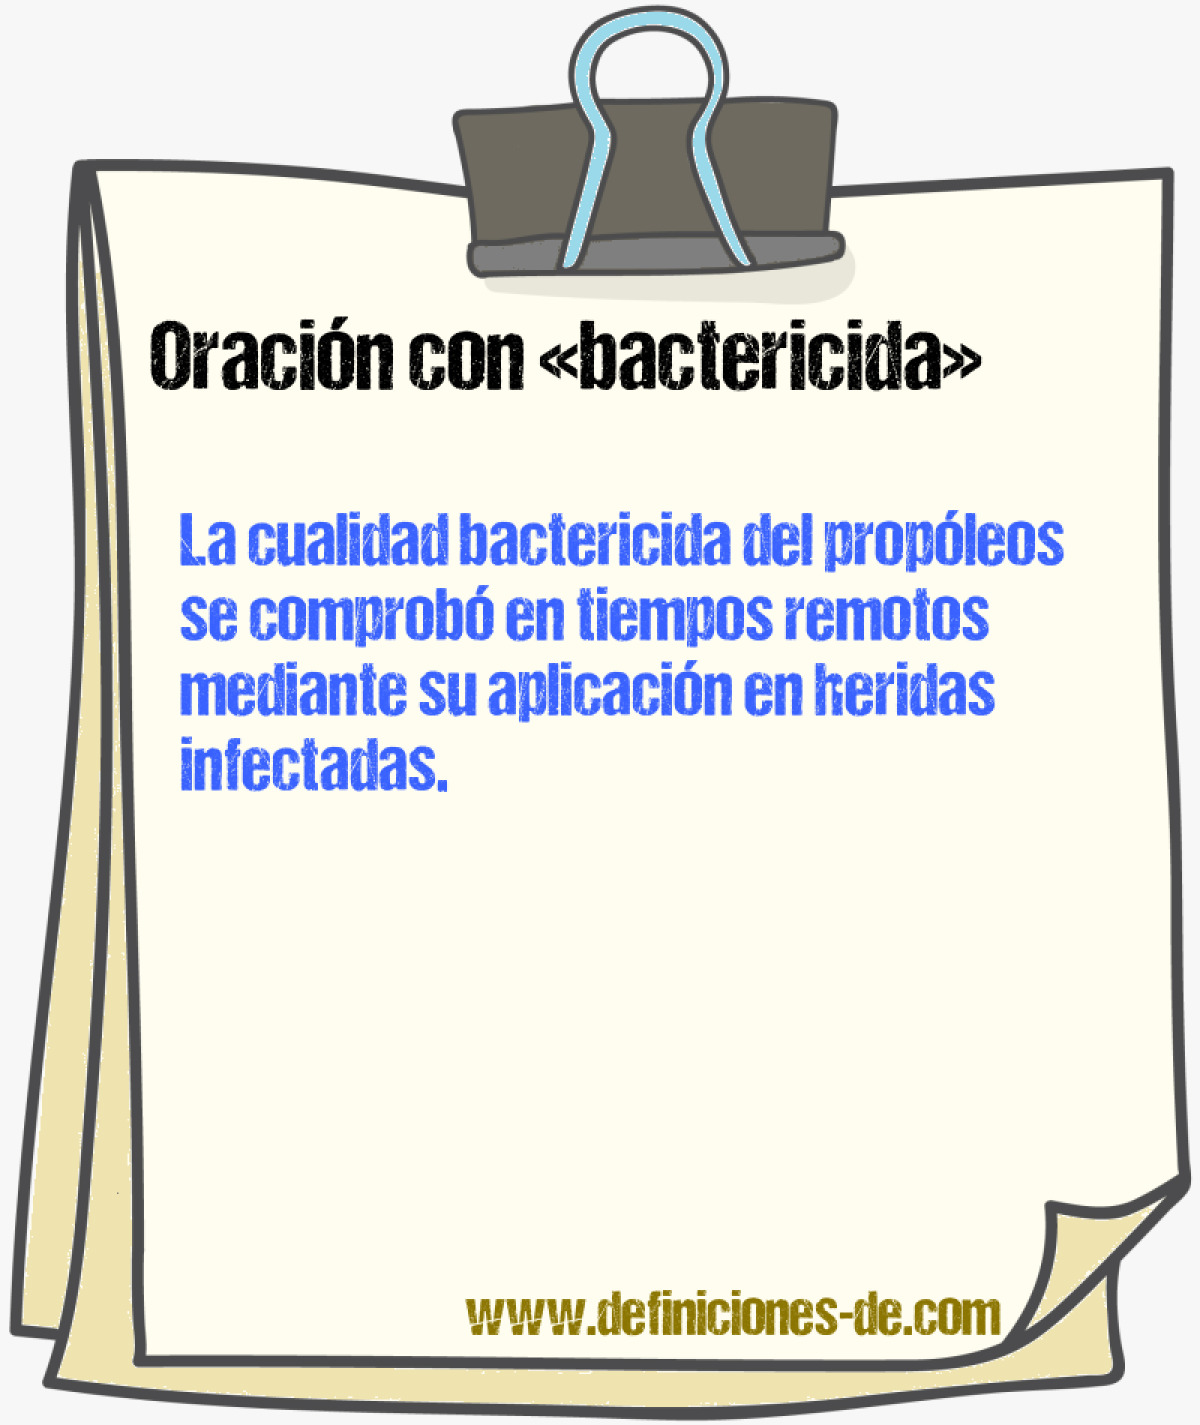 Ejemplos de oraciones con bactericida